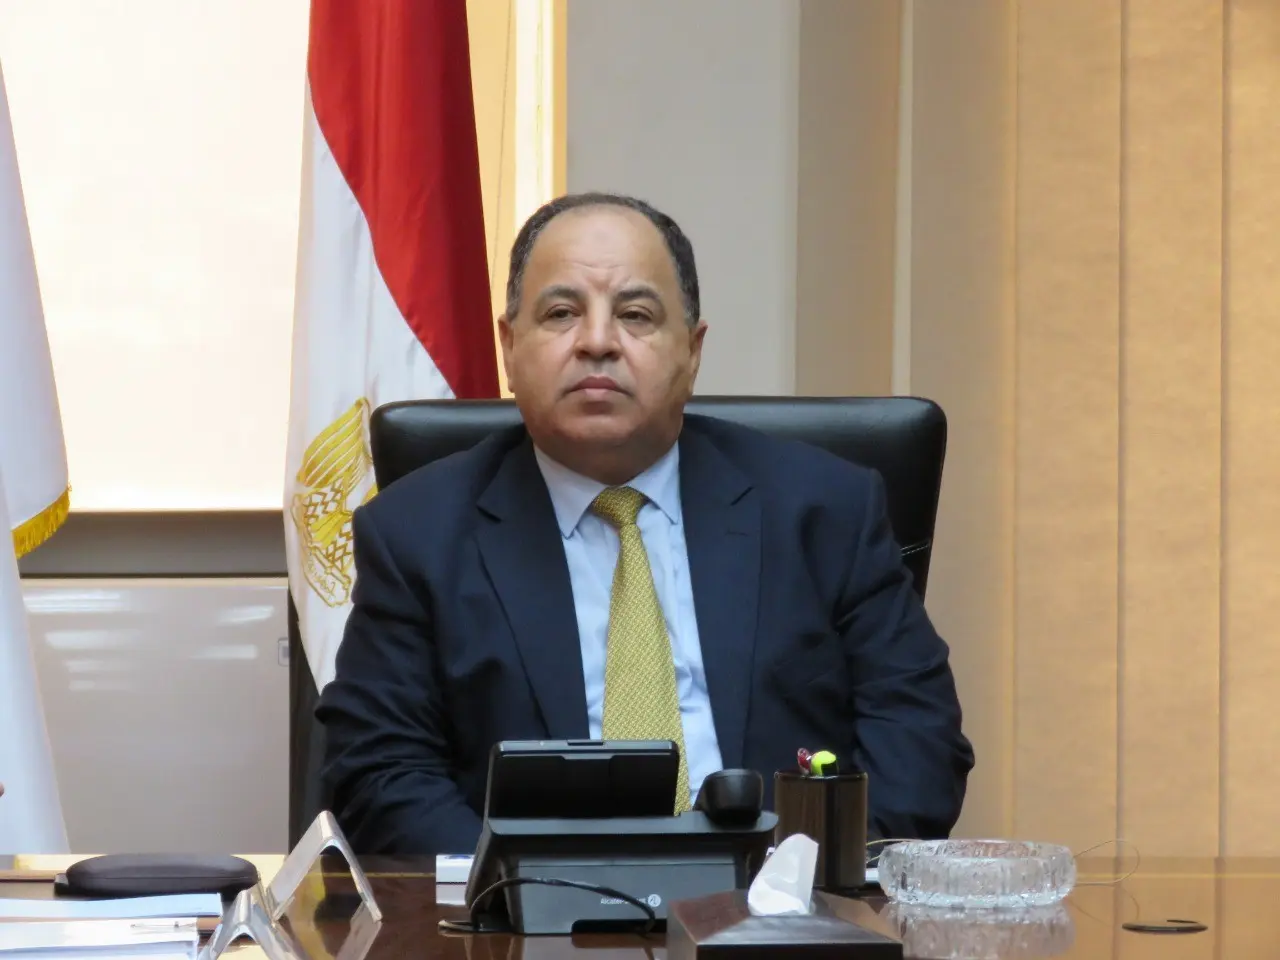 المالية: حزمة الإصلاحات الأخيرة للاقتصاد المصرى مازالت تحظى بإشادة المؤسسات الدولية 1